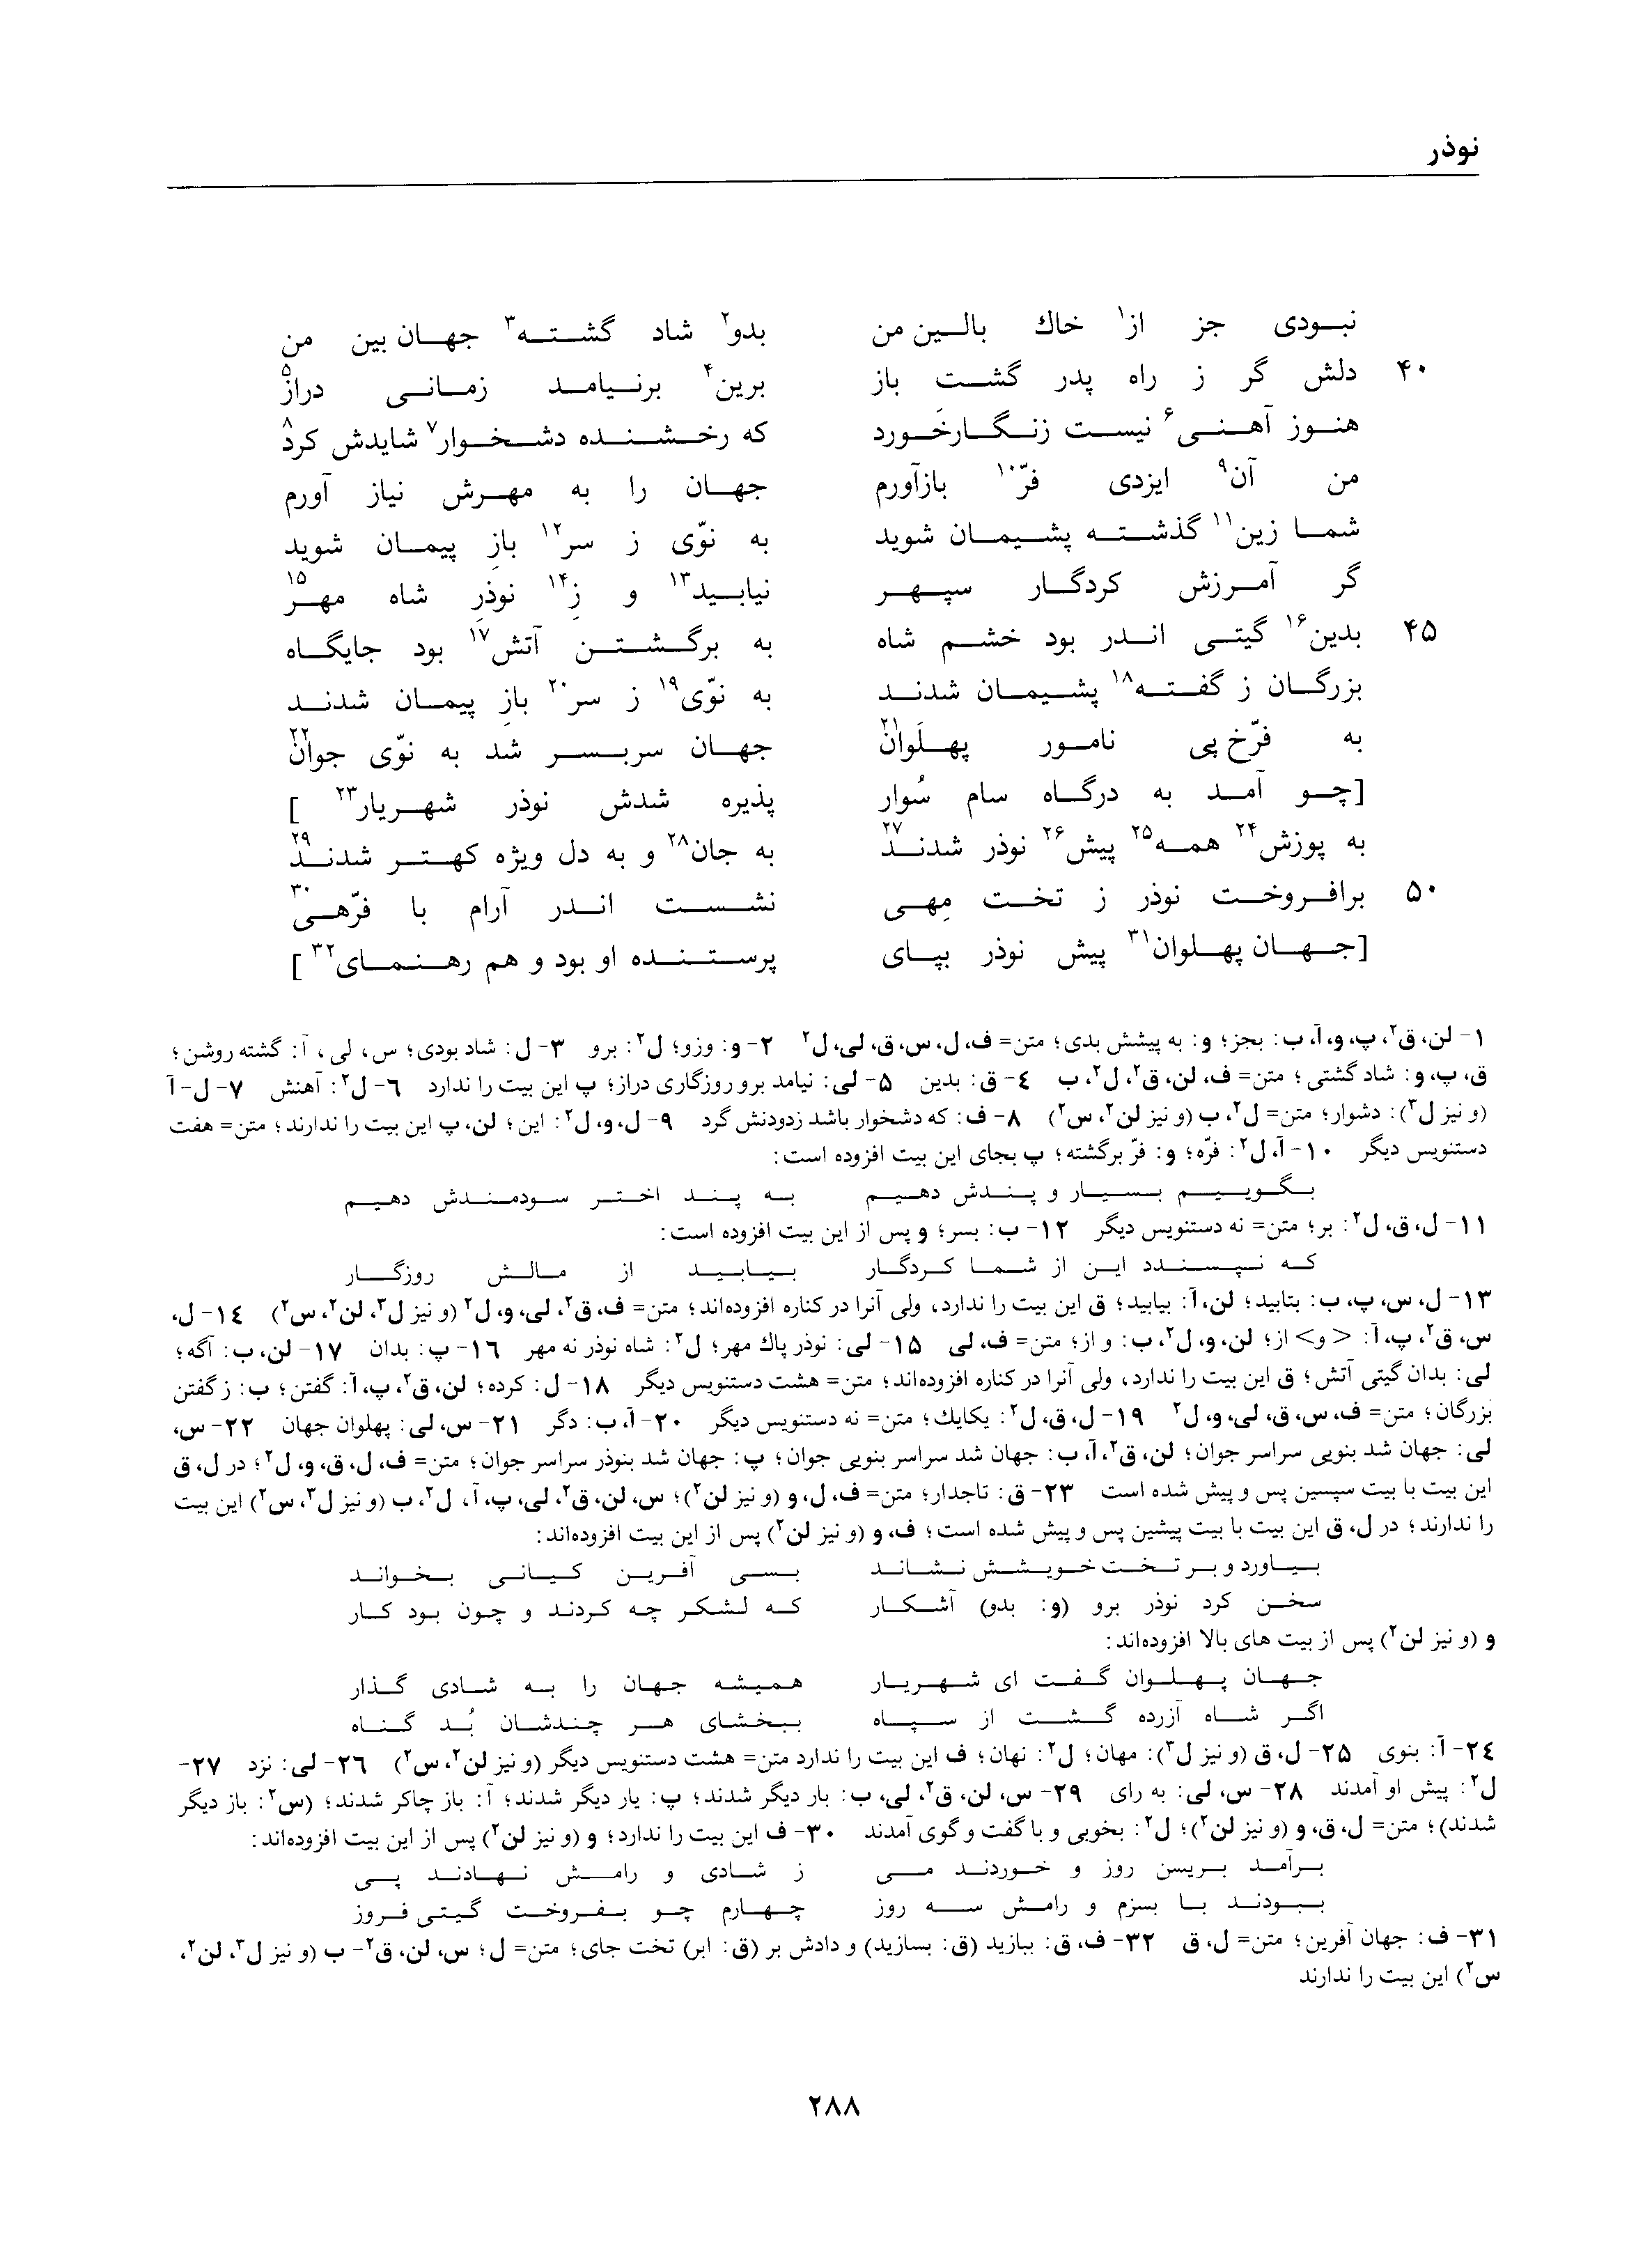 vol. 1, p. 288